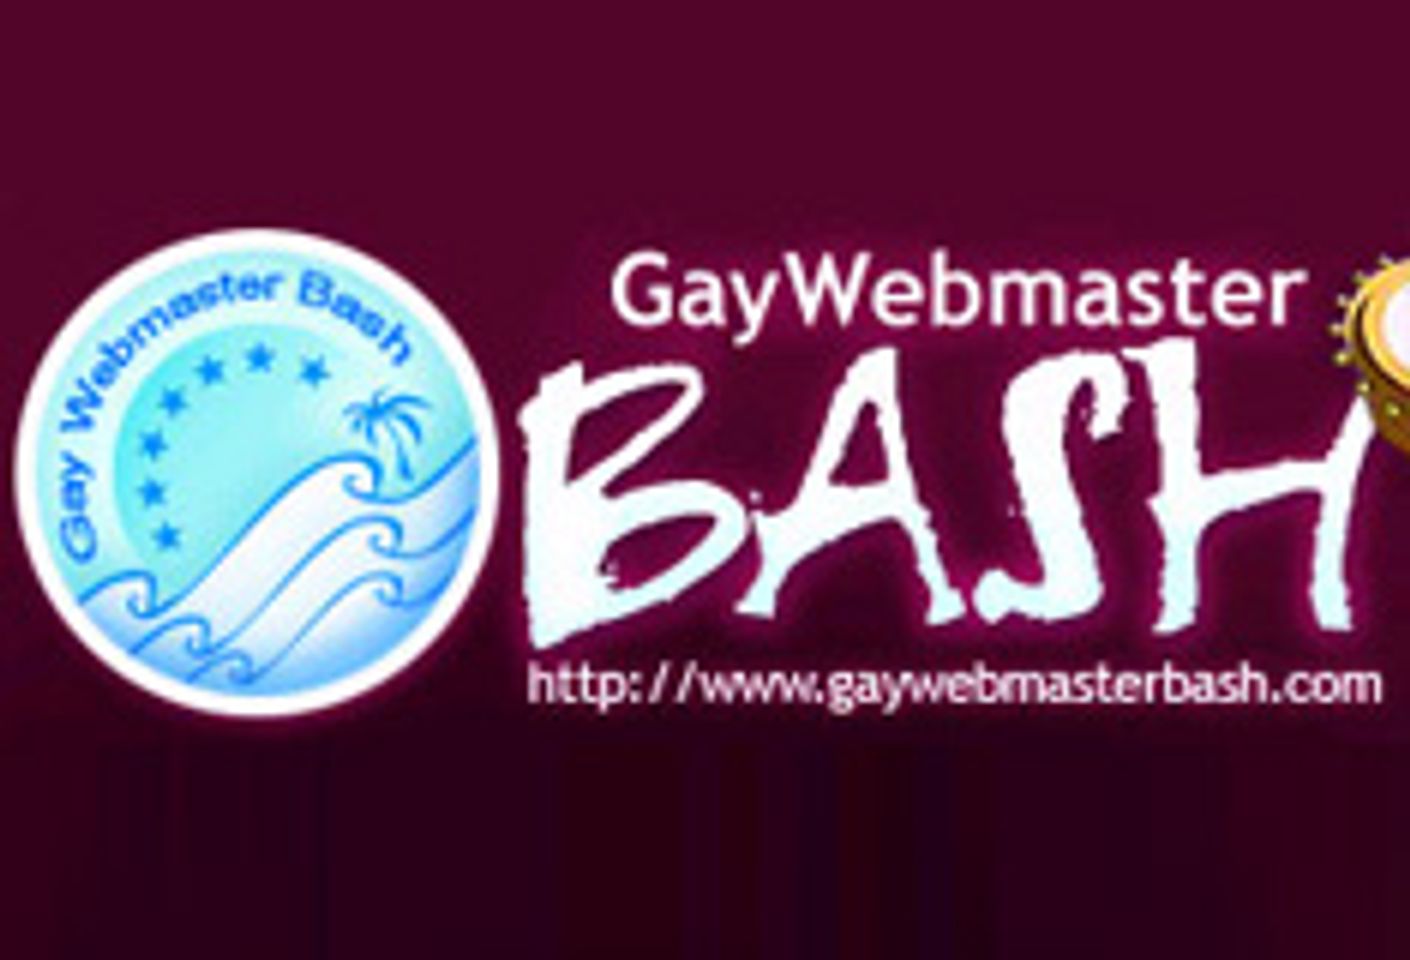 Gay Webmaster Bash Announces Phoenix Forum Lineup